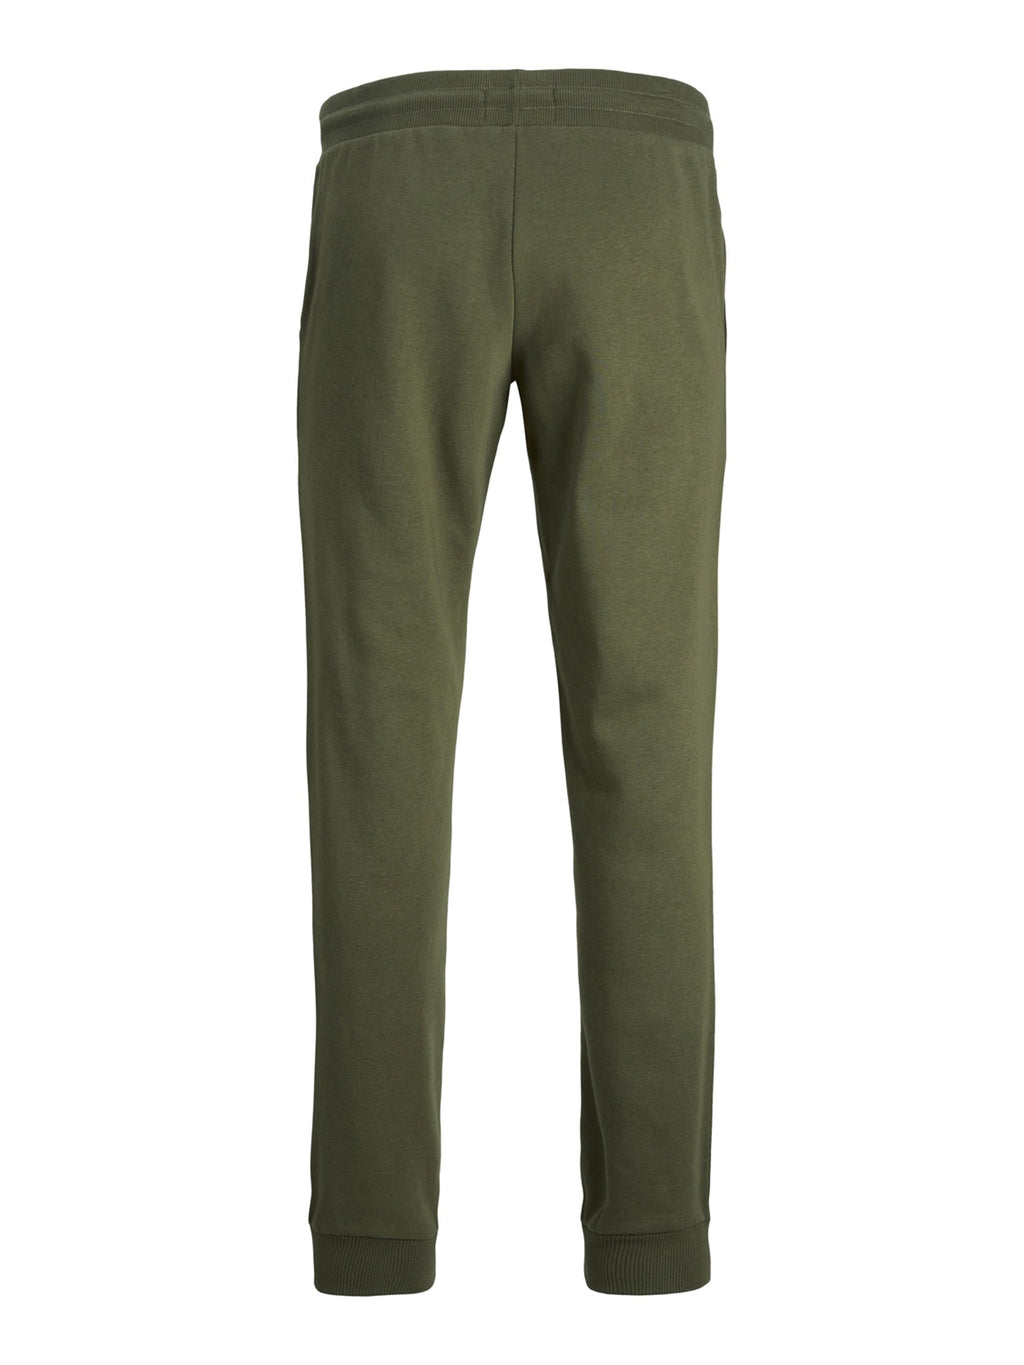 Pantalon de survêtement de base - vert foncé